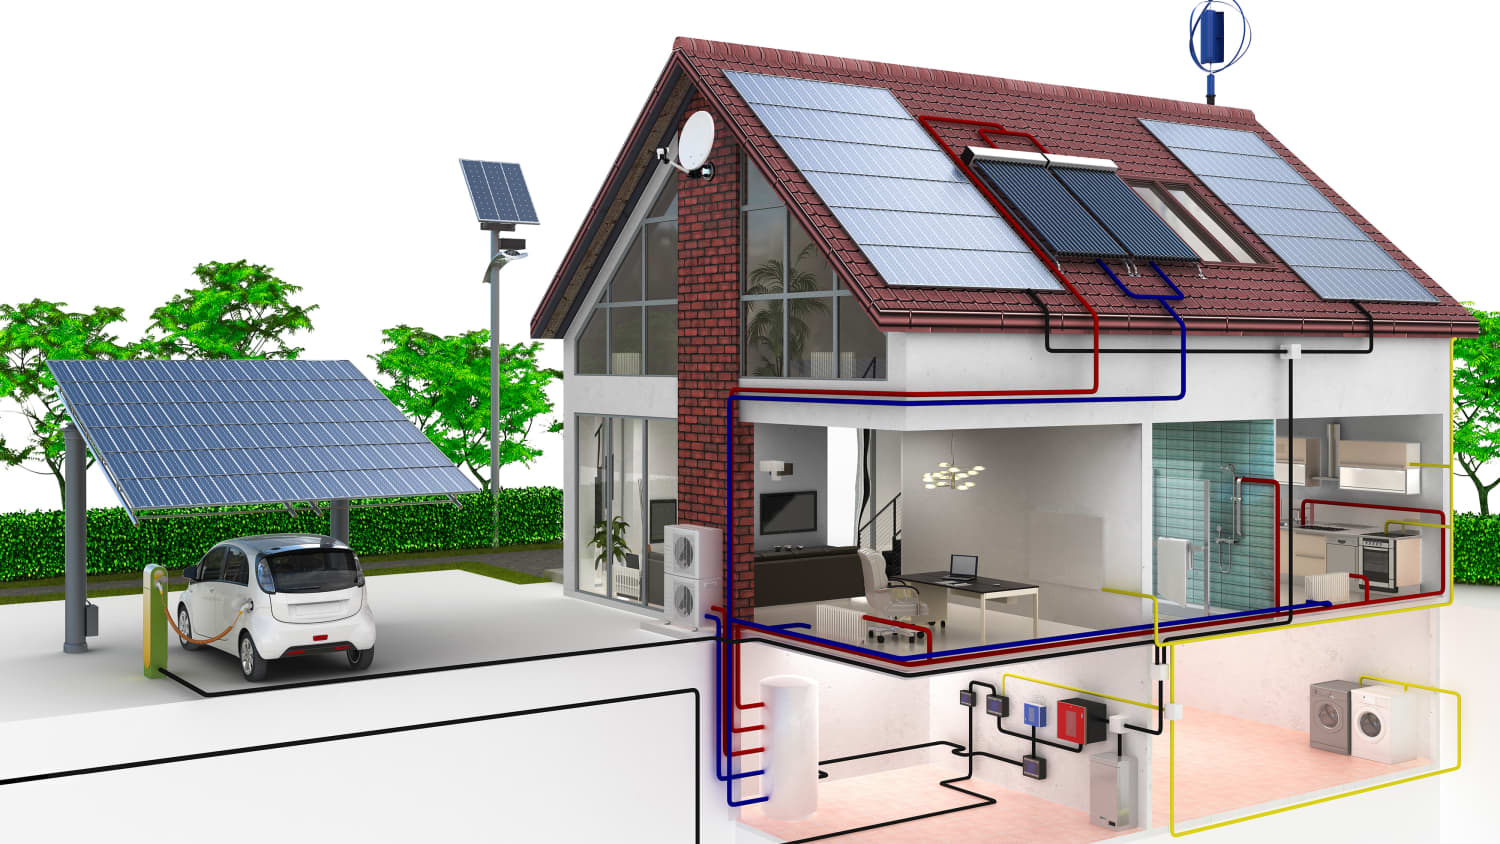 Stromspeicher für Photovoltaik - Kosten und Wirtschaftlichkeit